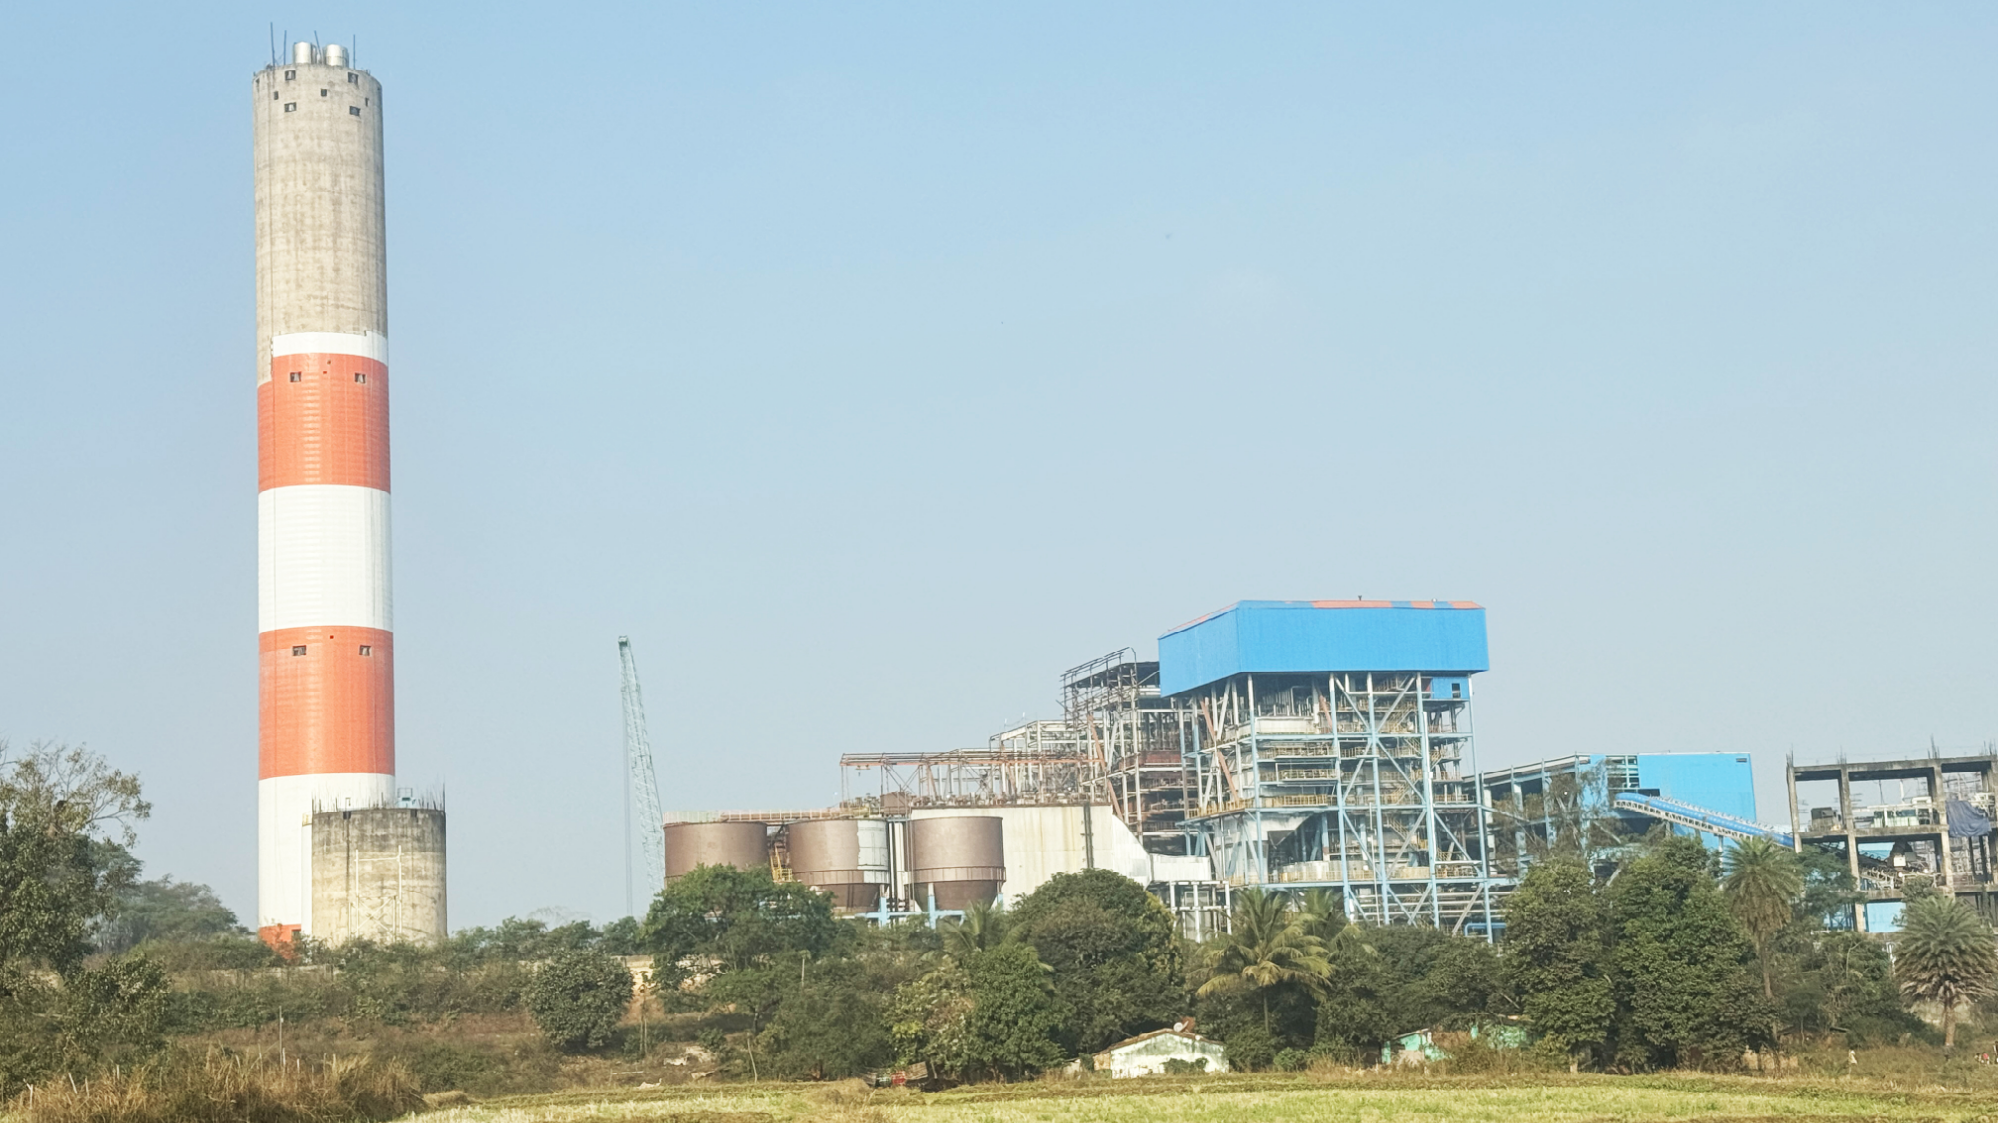 Хорошая новость！Старые электростанции превращают в новые в индийском Ведантарангигар - проект о реконструкции элекростанции мощностью 130 Мвт , блок №1 успешно подключен к сети в первый раз